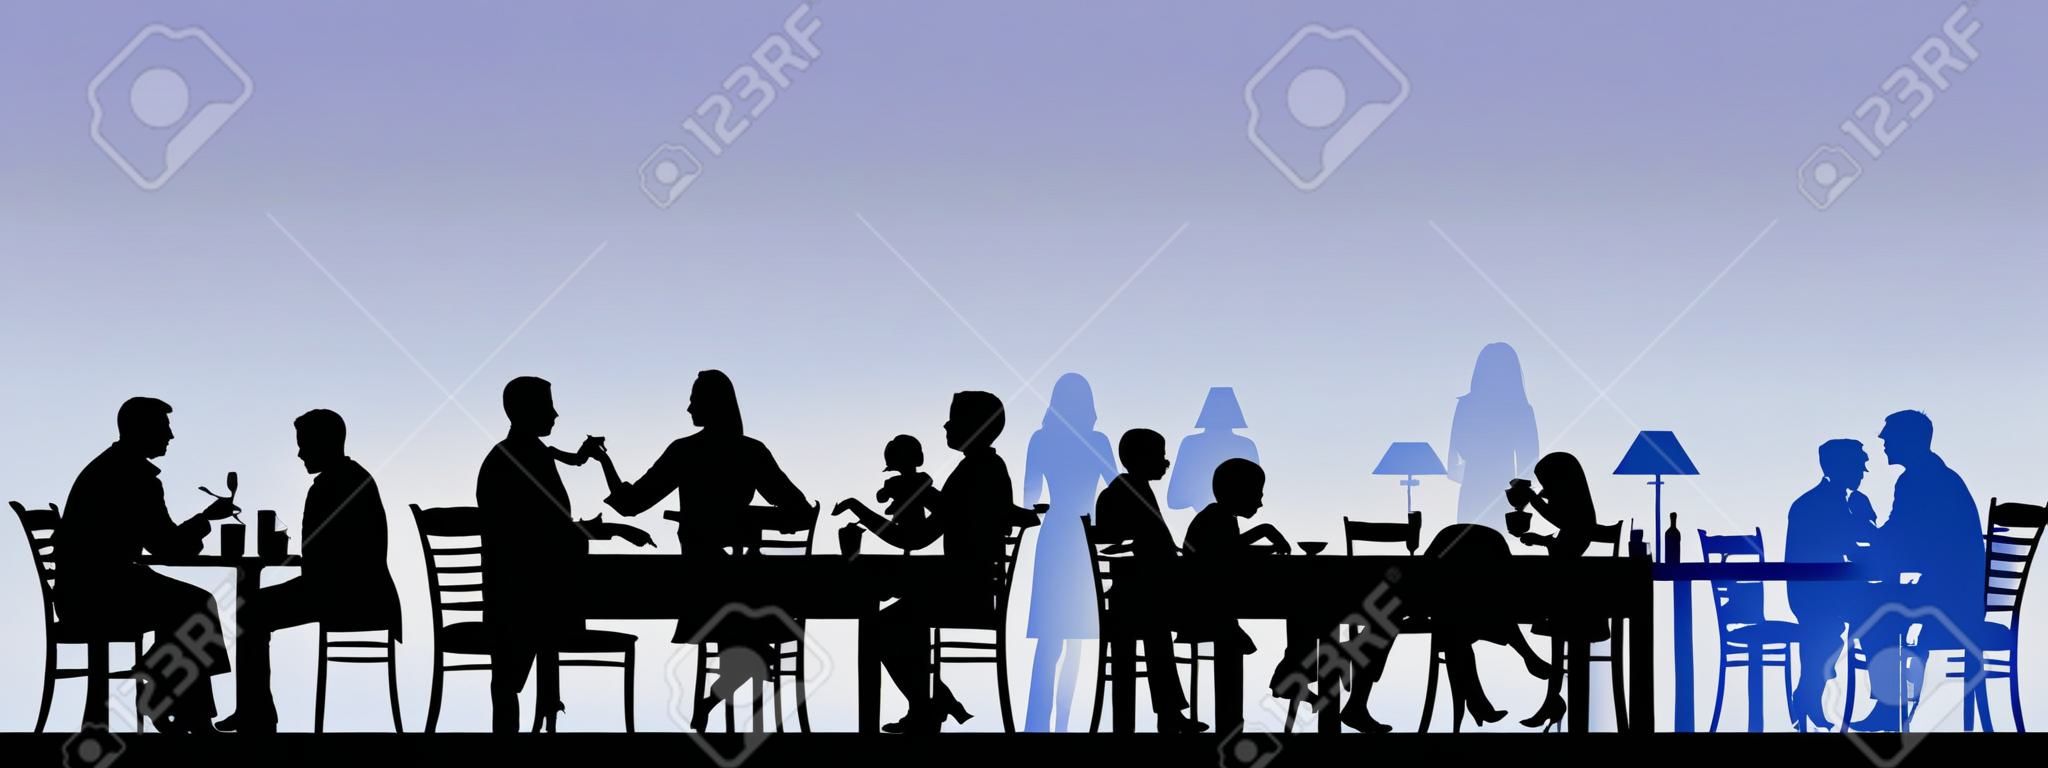 Silhueta de pessoas comendo em um restaurante com todas as figuras como objetos separados em camadas